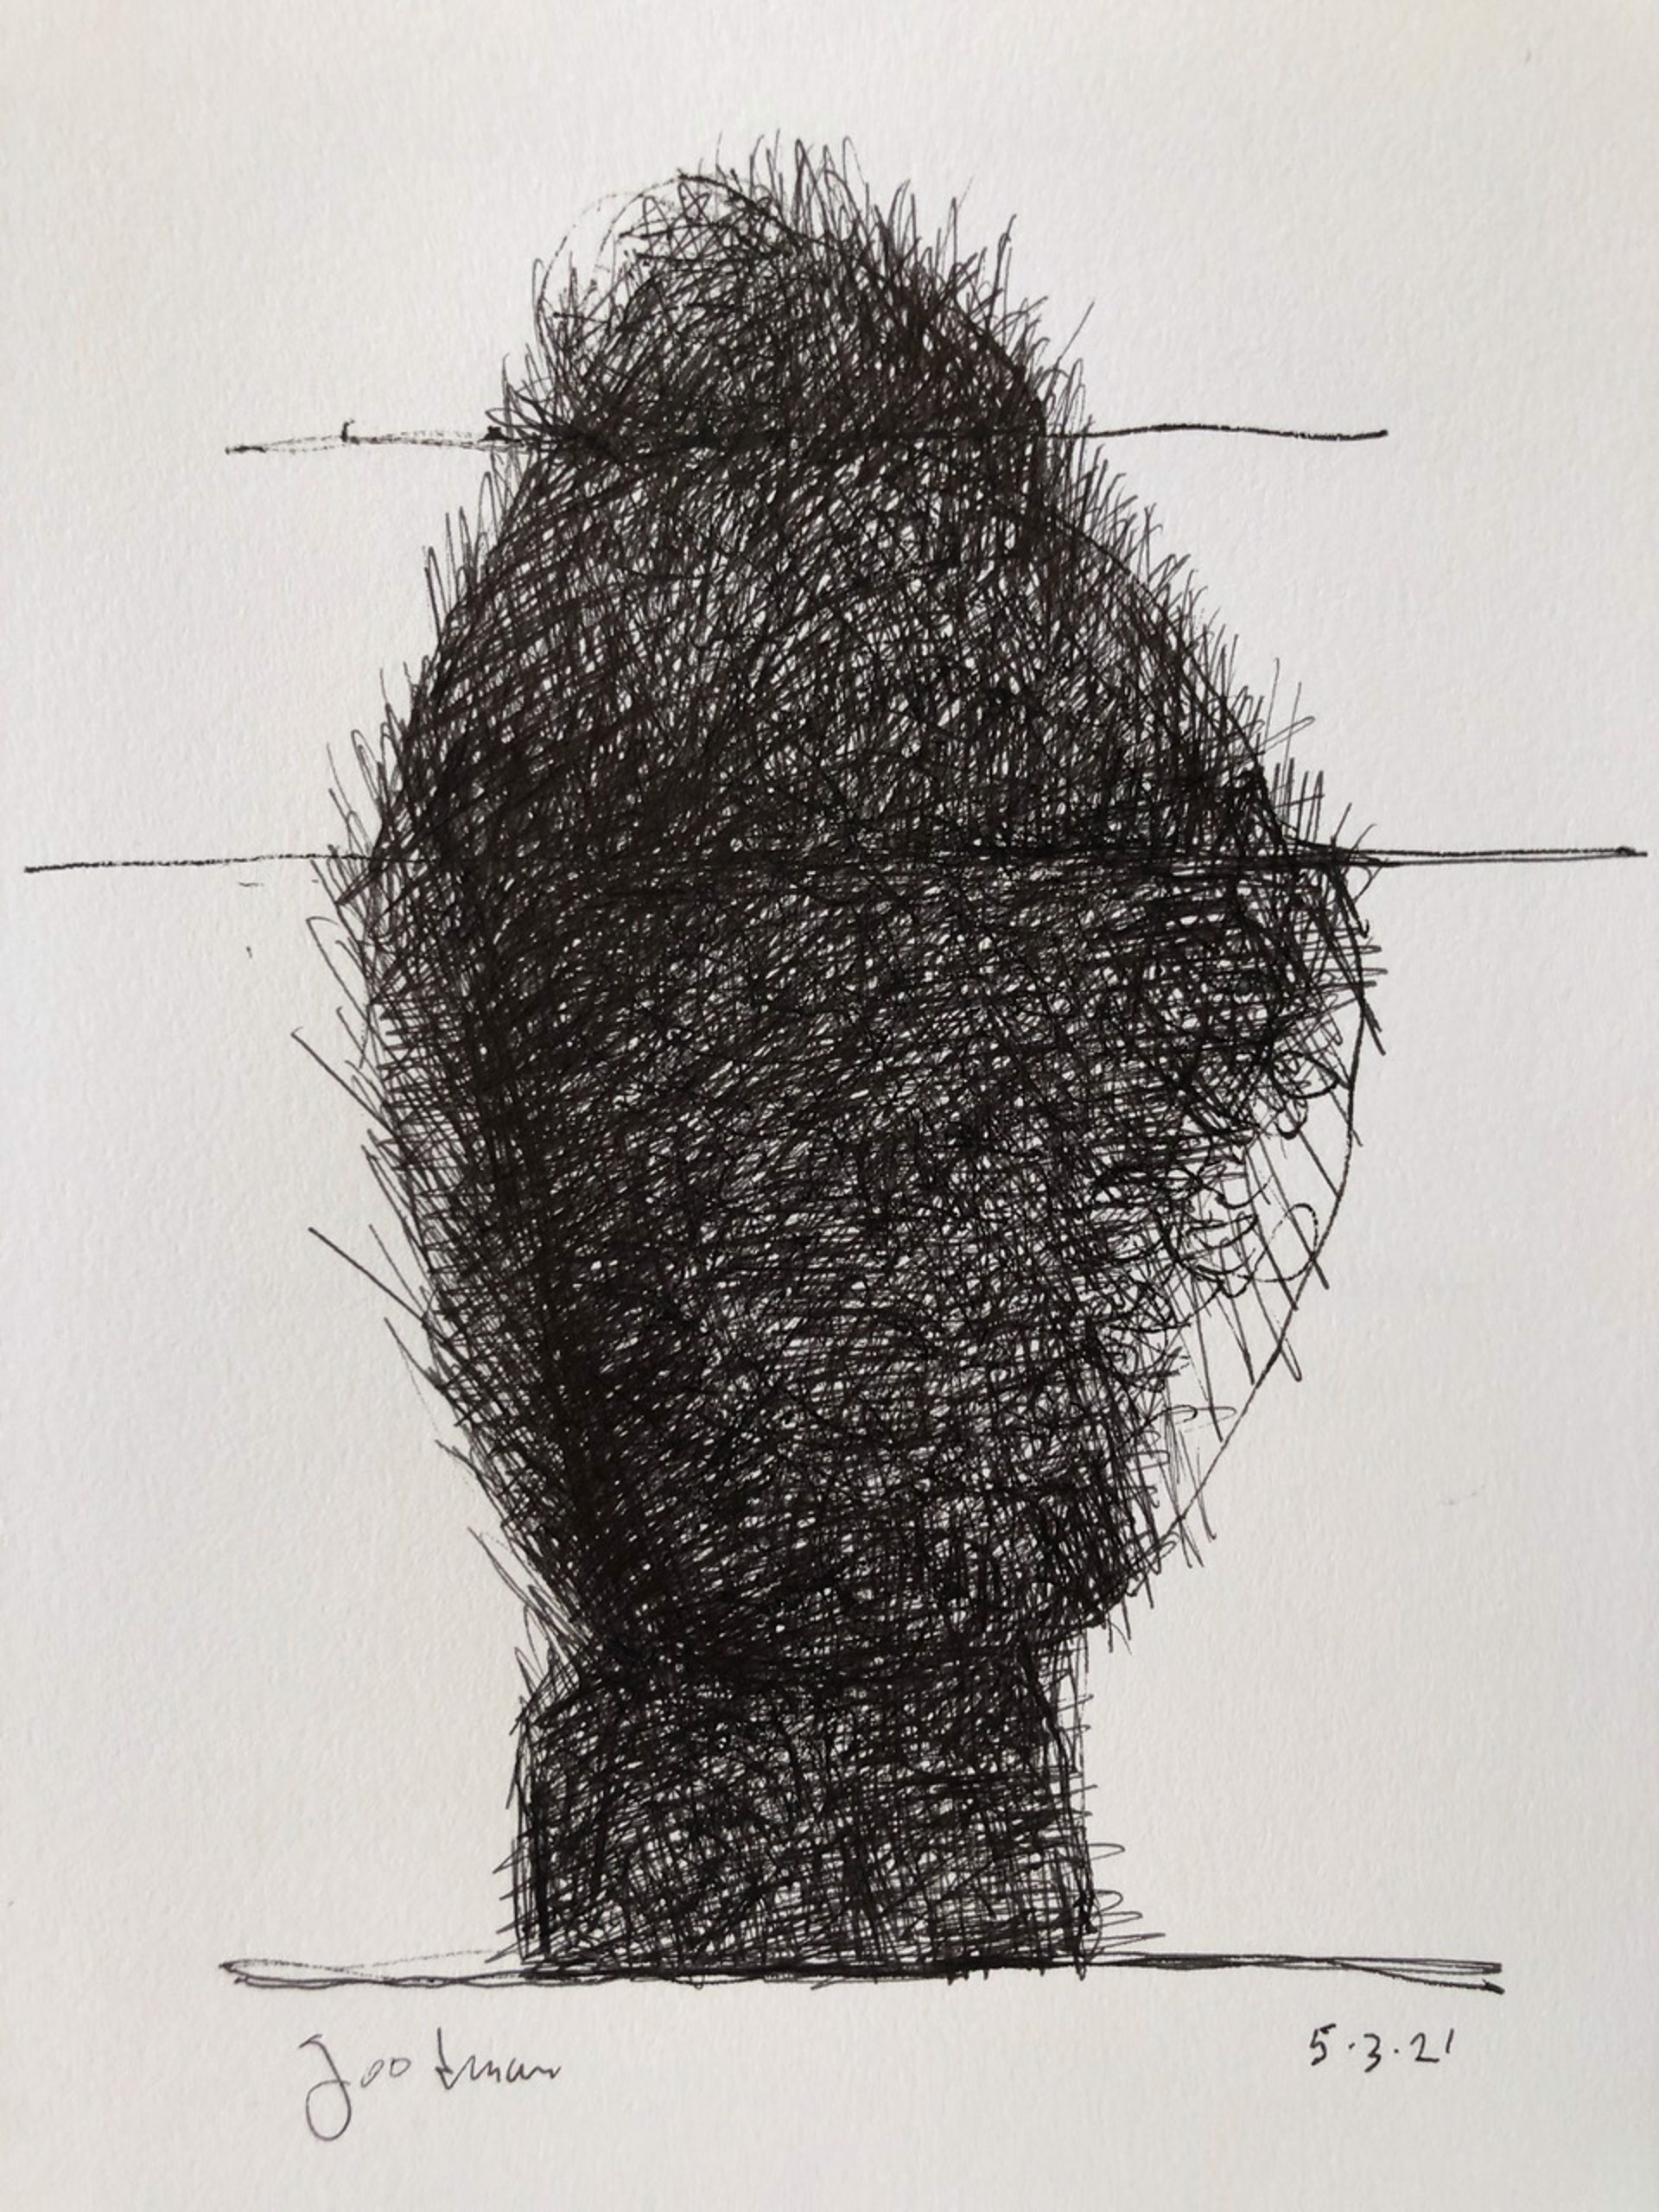 Abstract no.1, 2021 by John Goodman